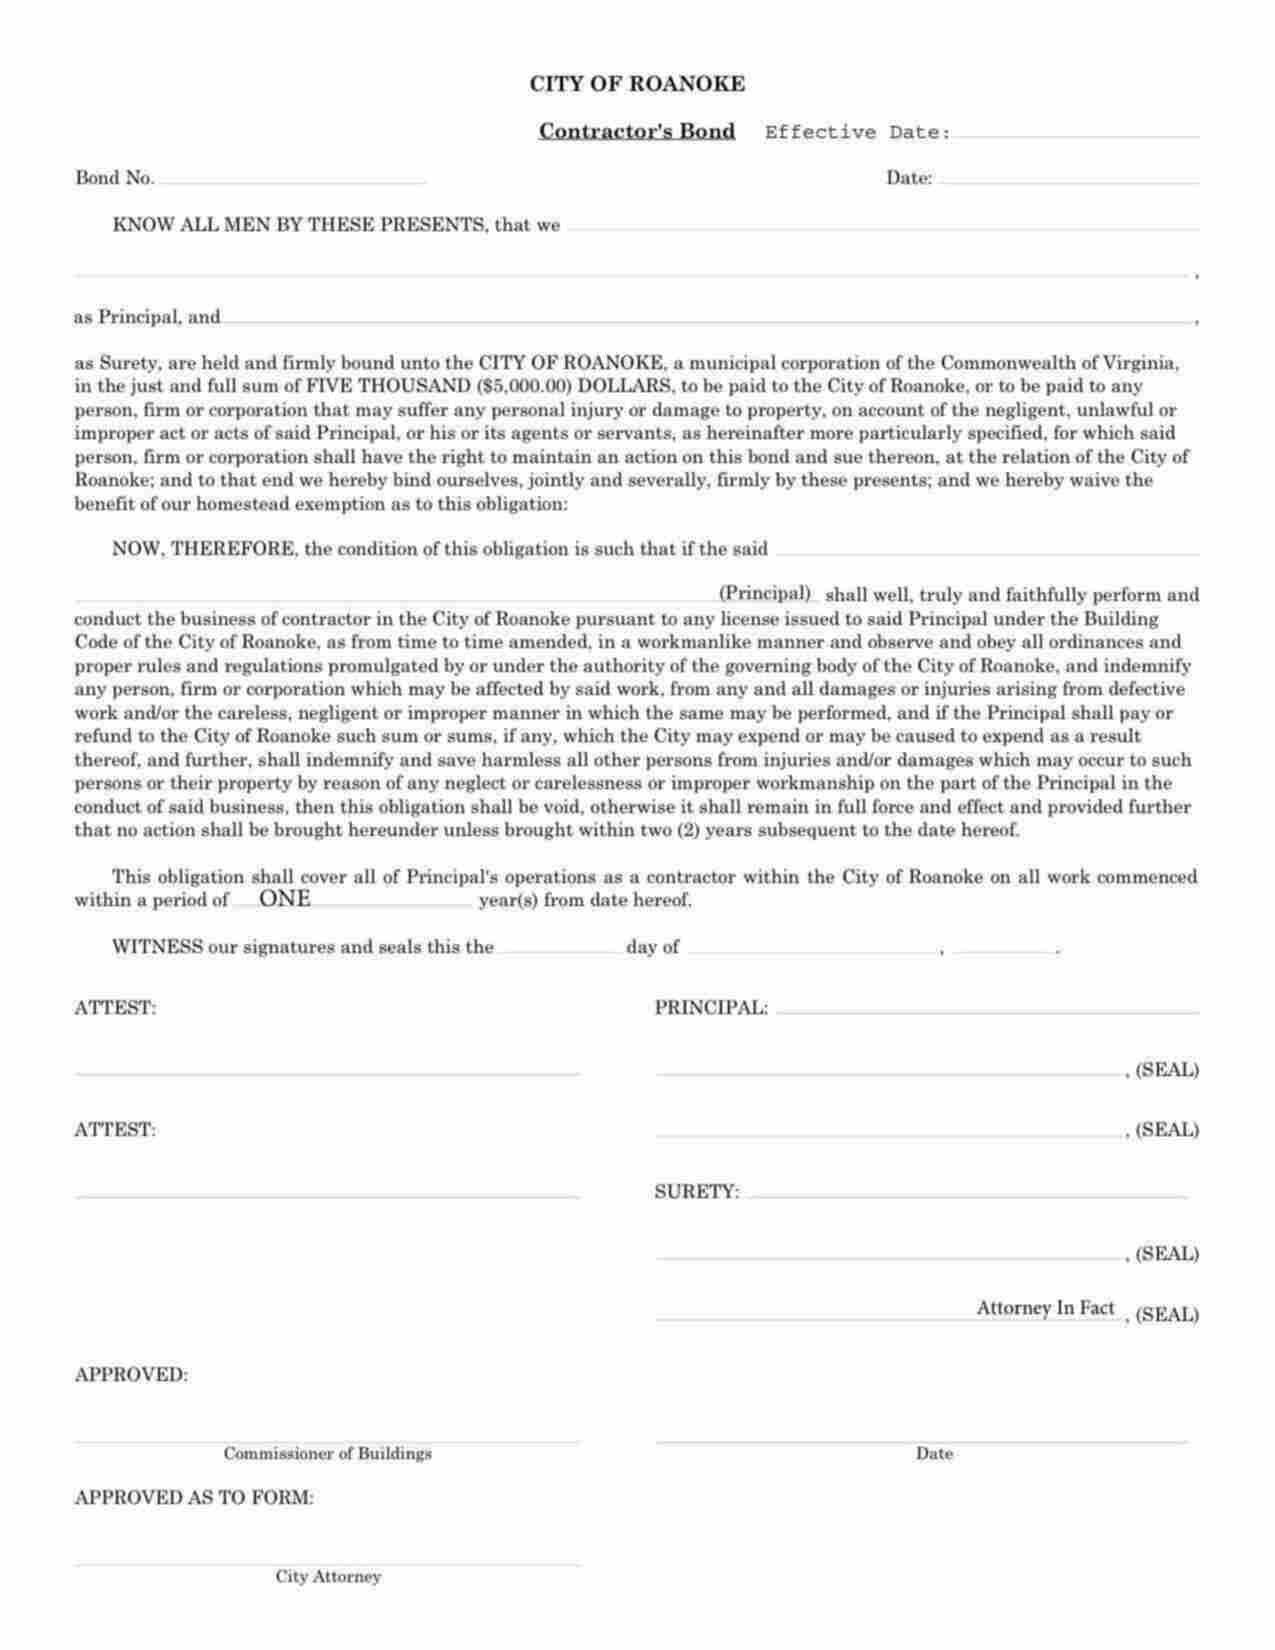 Virginia Contractor's License/Permit Bond Form